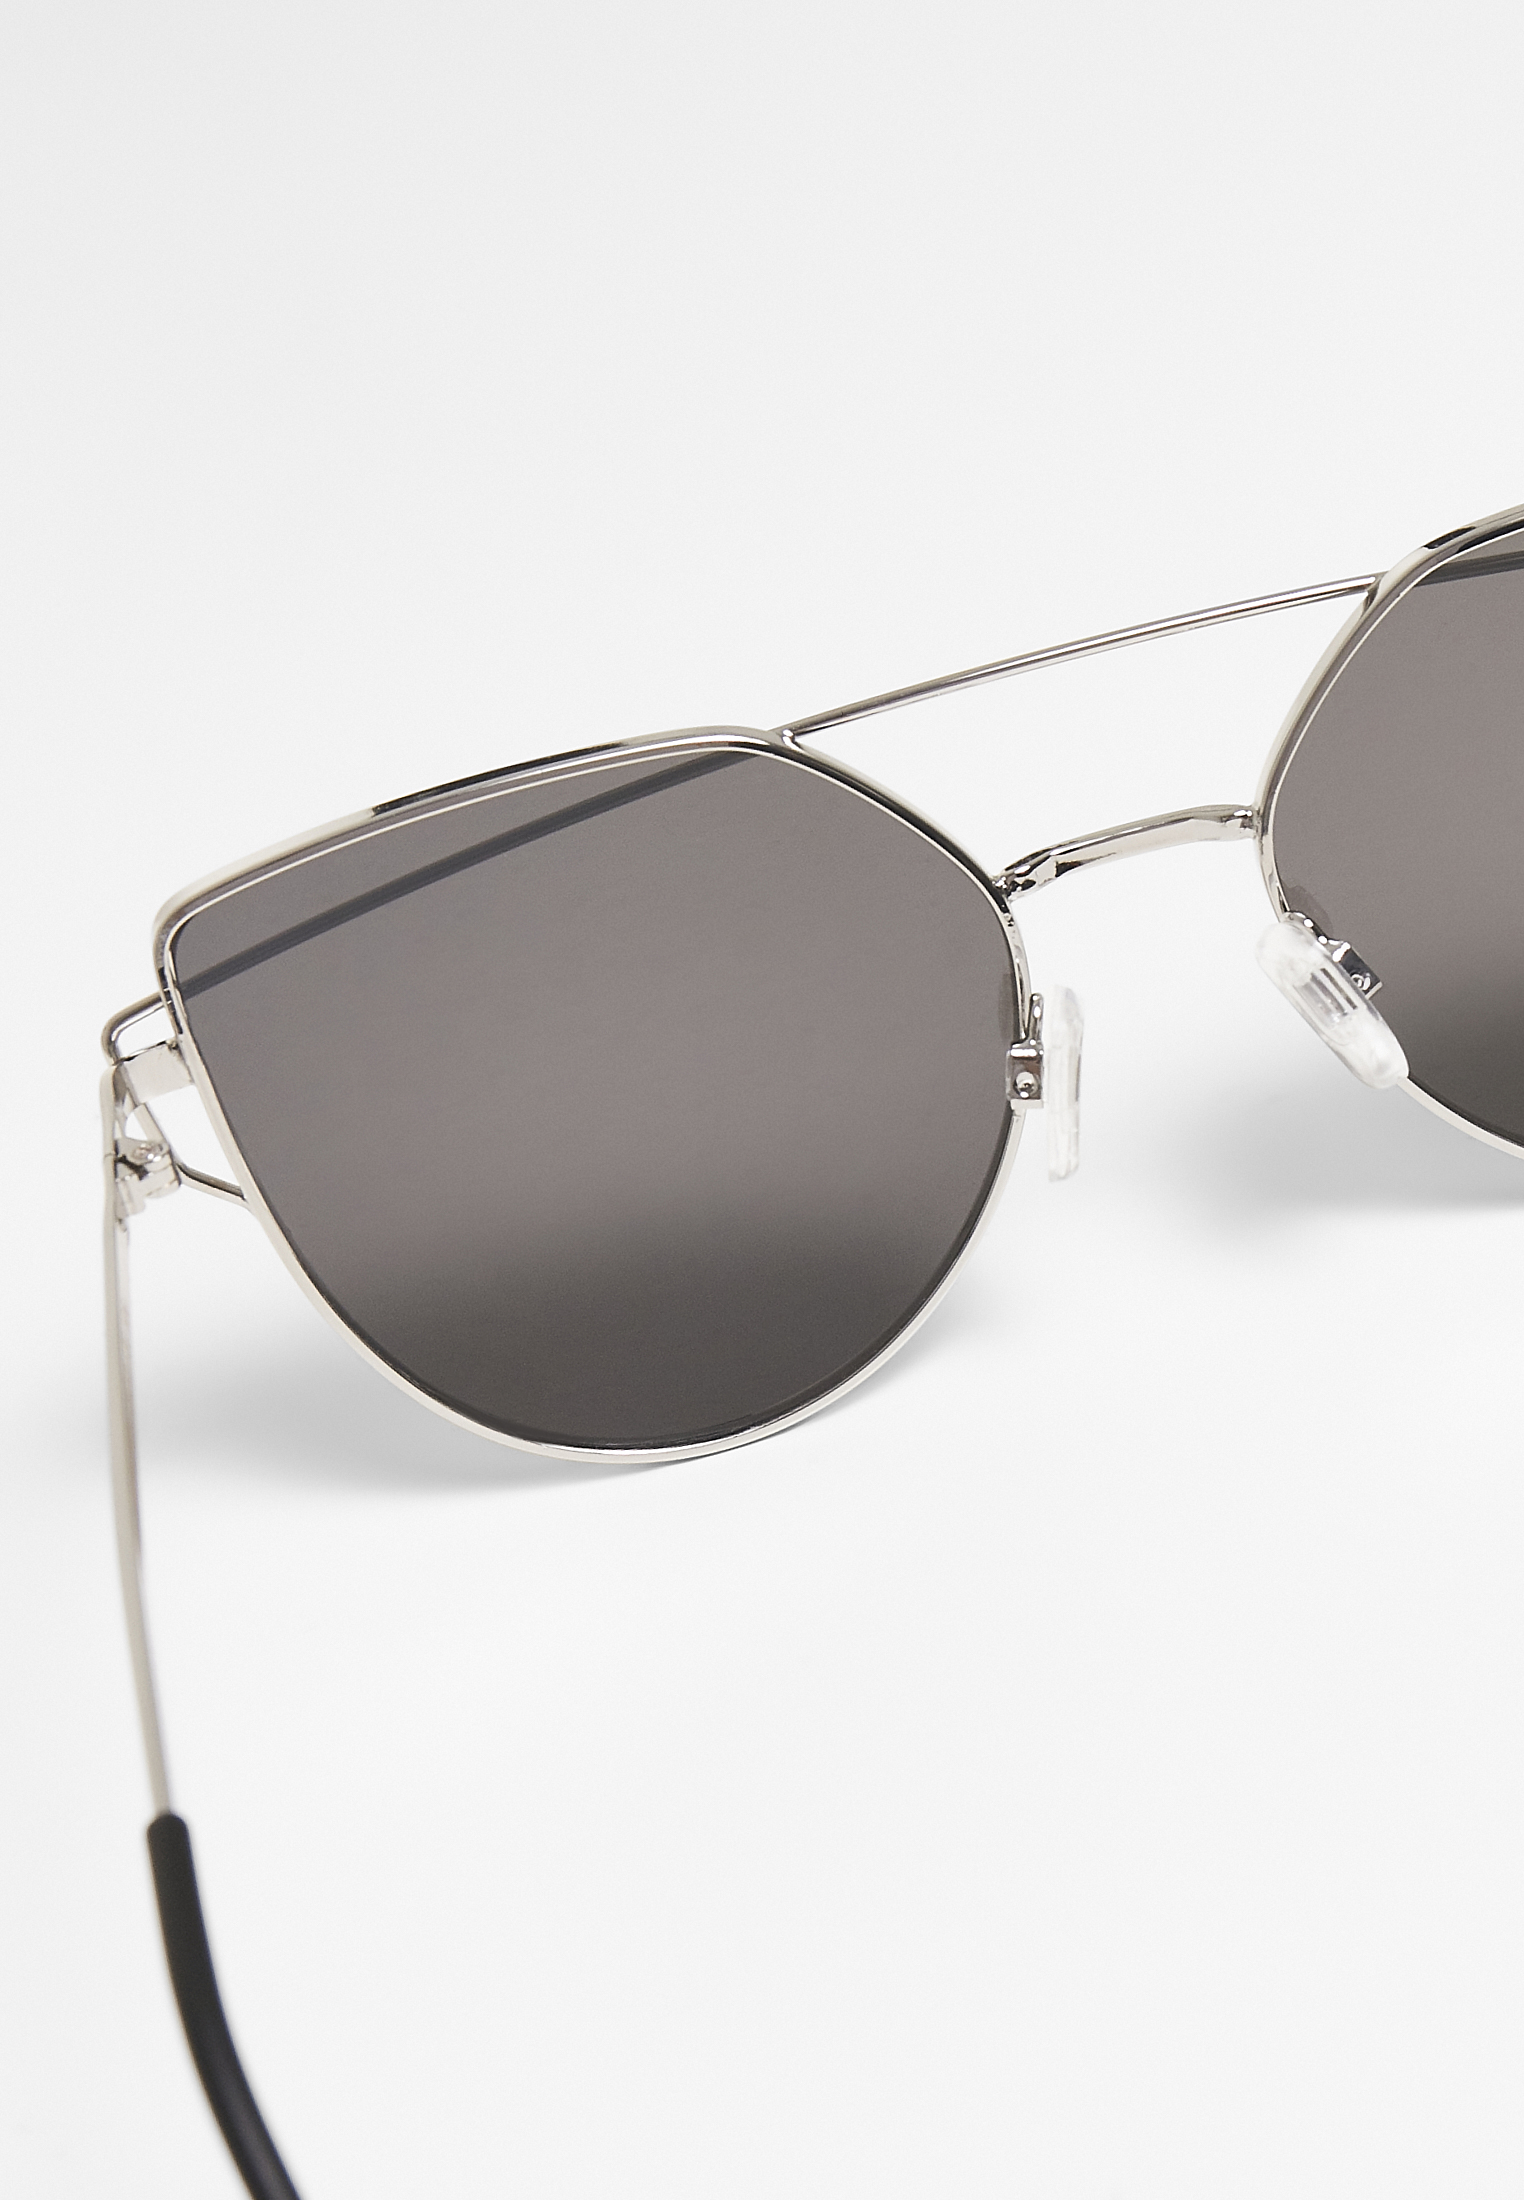 Sonnenbrillen Sunglasses July UC in Farbe silver